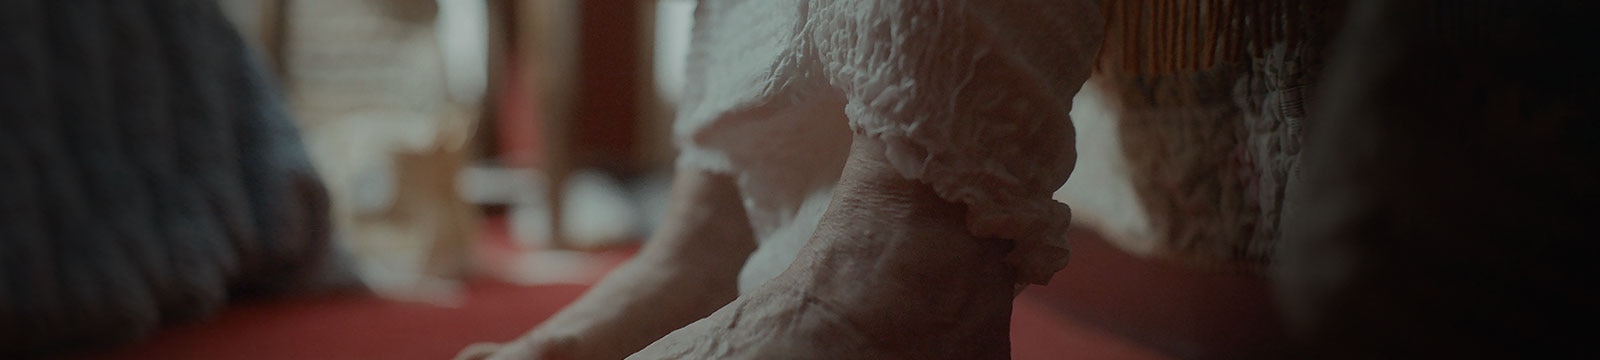 Lovoje sėdintis senyvo amžiaus žmogus su sauskelnėmis, sauskelnių vaizdas iš arti.